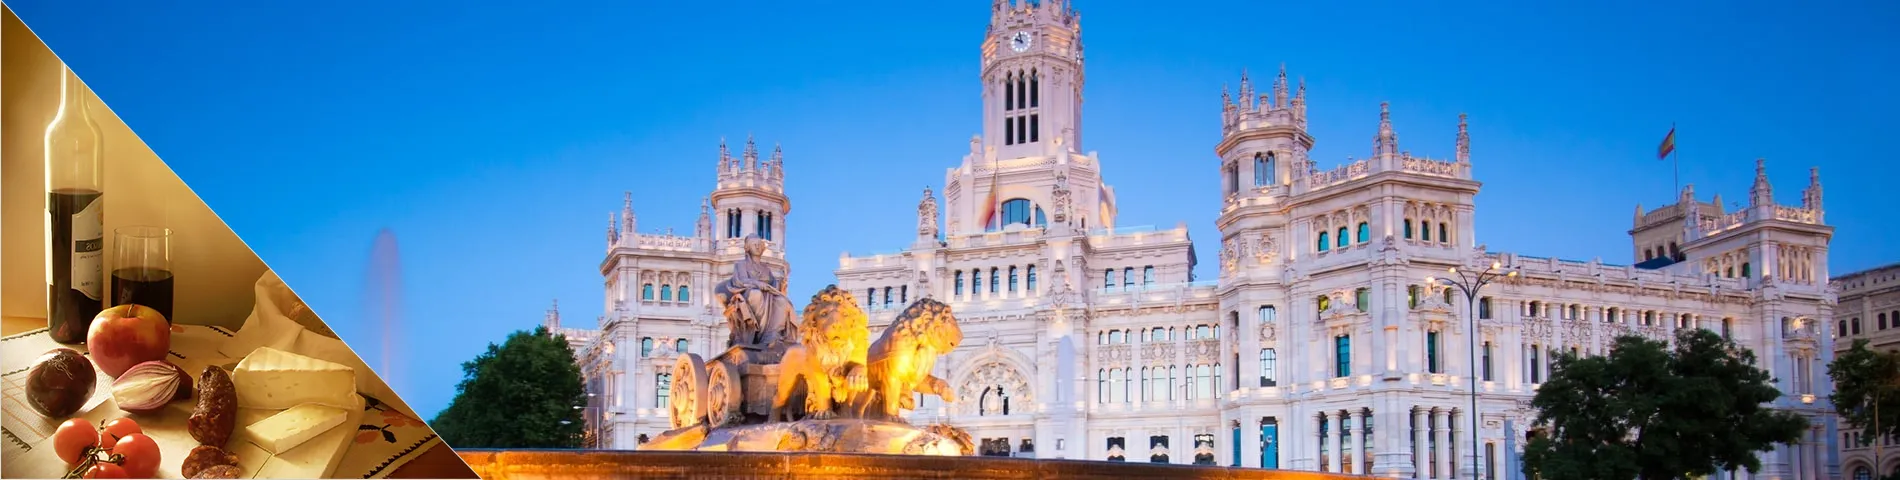 Madrid - Spanish & Culture